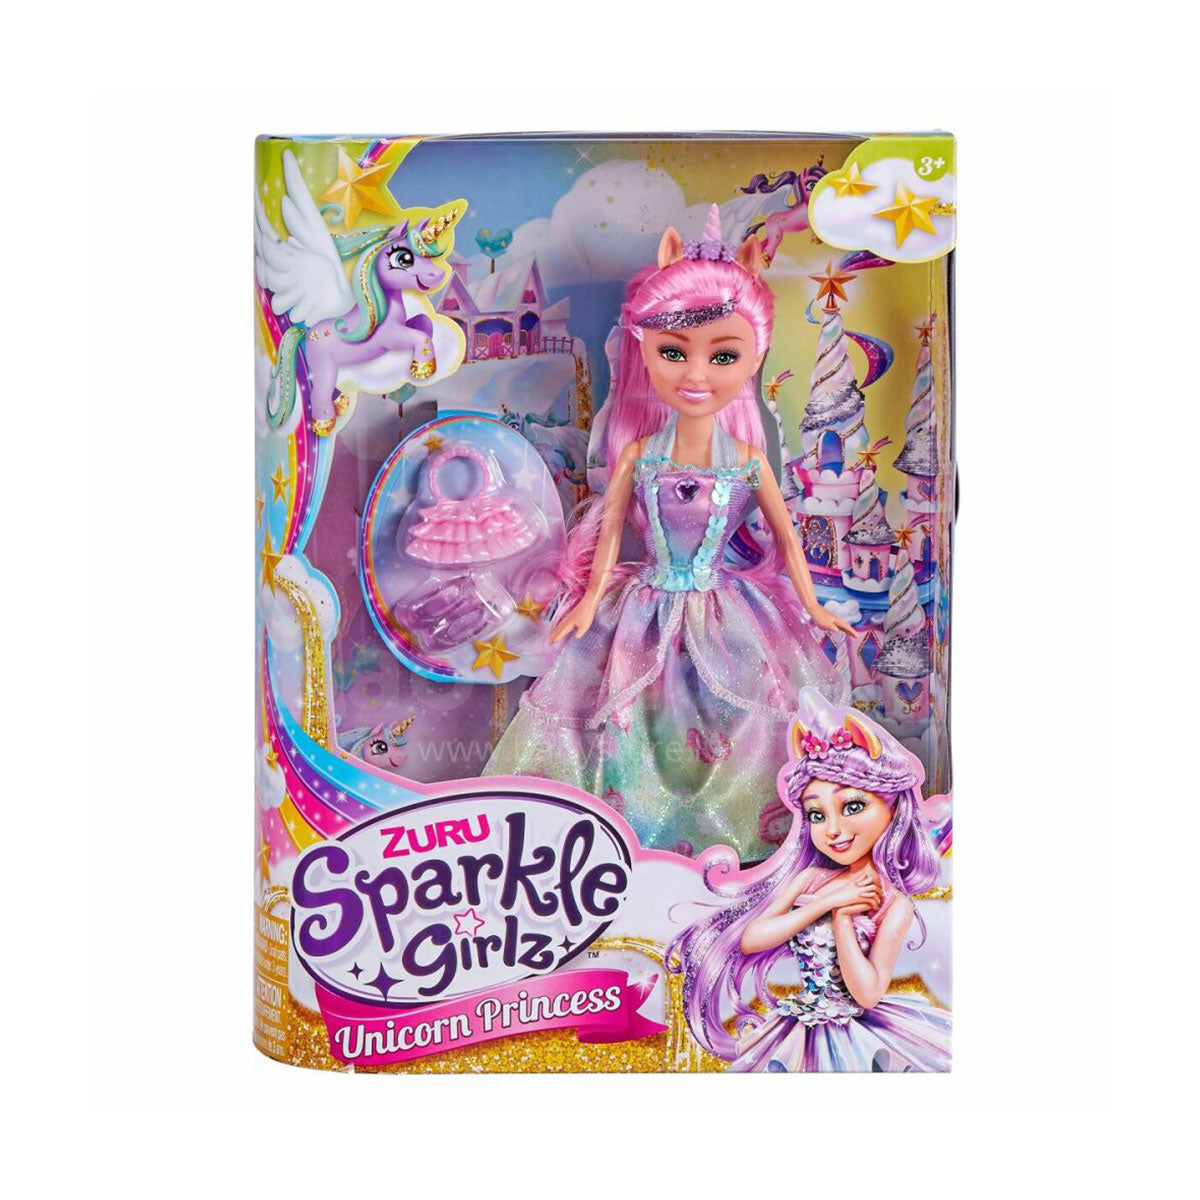 Sparkle Girlz Unicorn Princess by ZURU (Styles Vary - One Supplied)